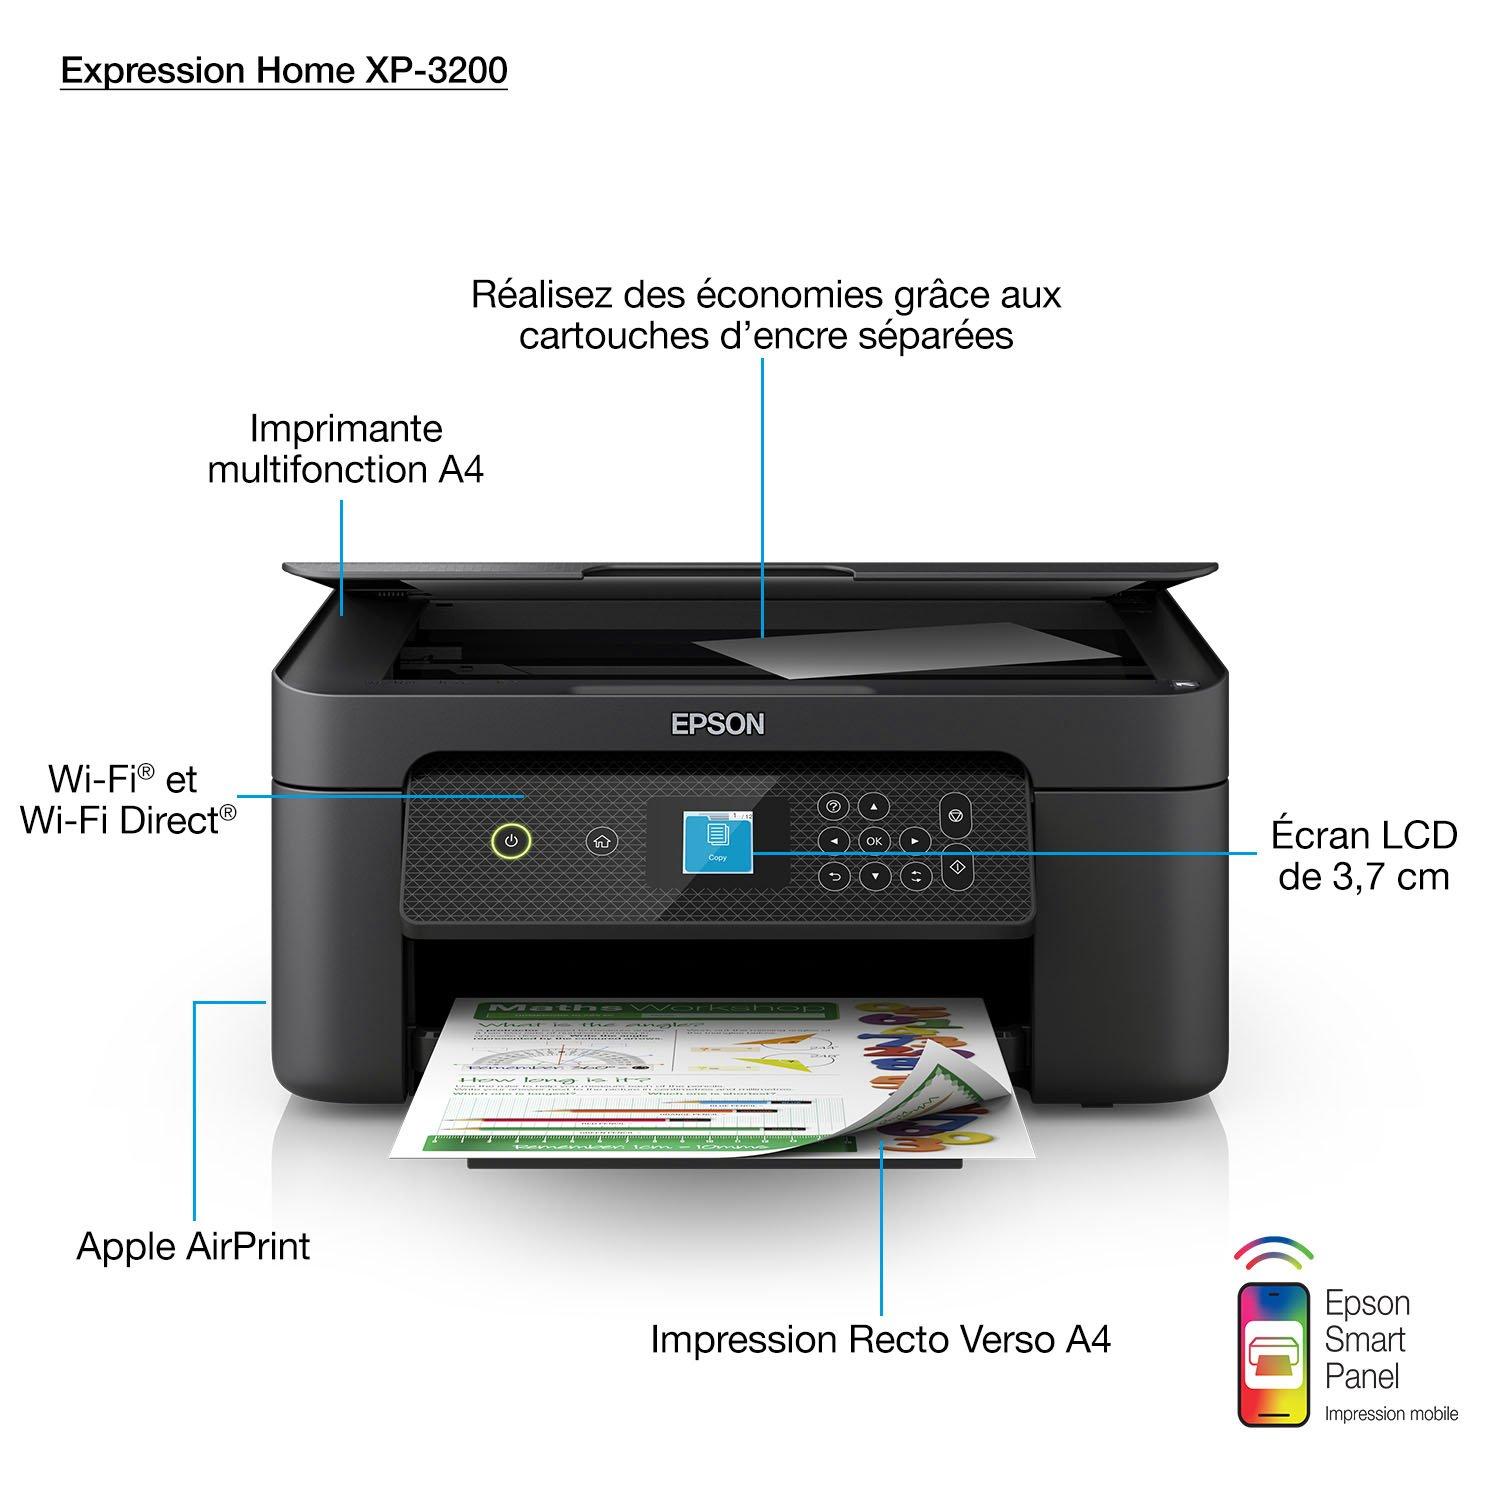 Imprimante multifonction couleur Wi-Fi Expression Home XP-3200 d